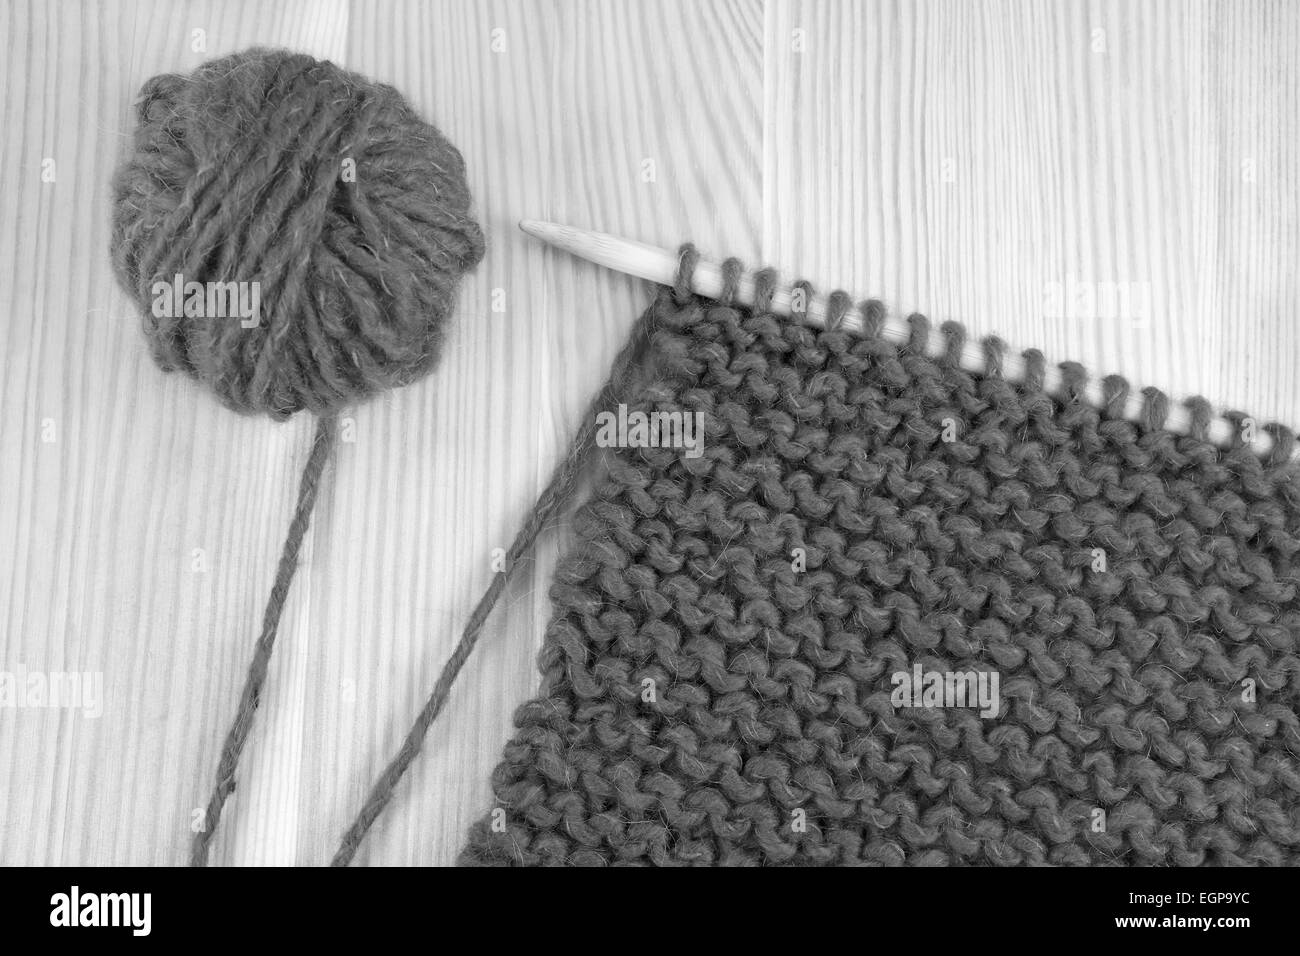 Bola de lana y garter stitch en una aguja de tejer - procesamiento monocromo Foto de stock